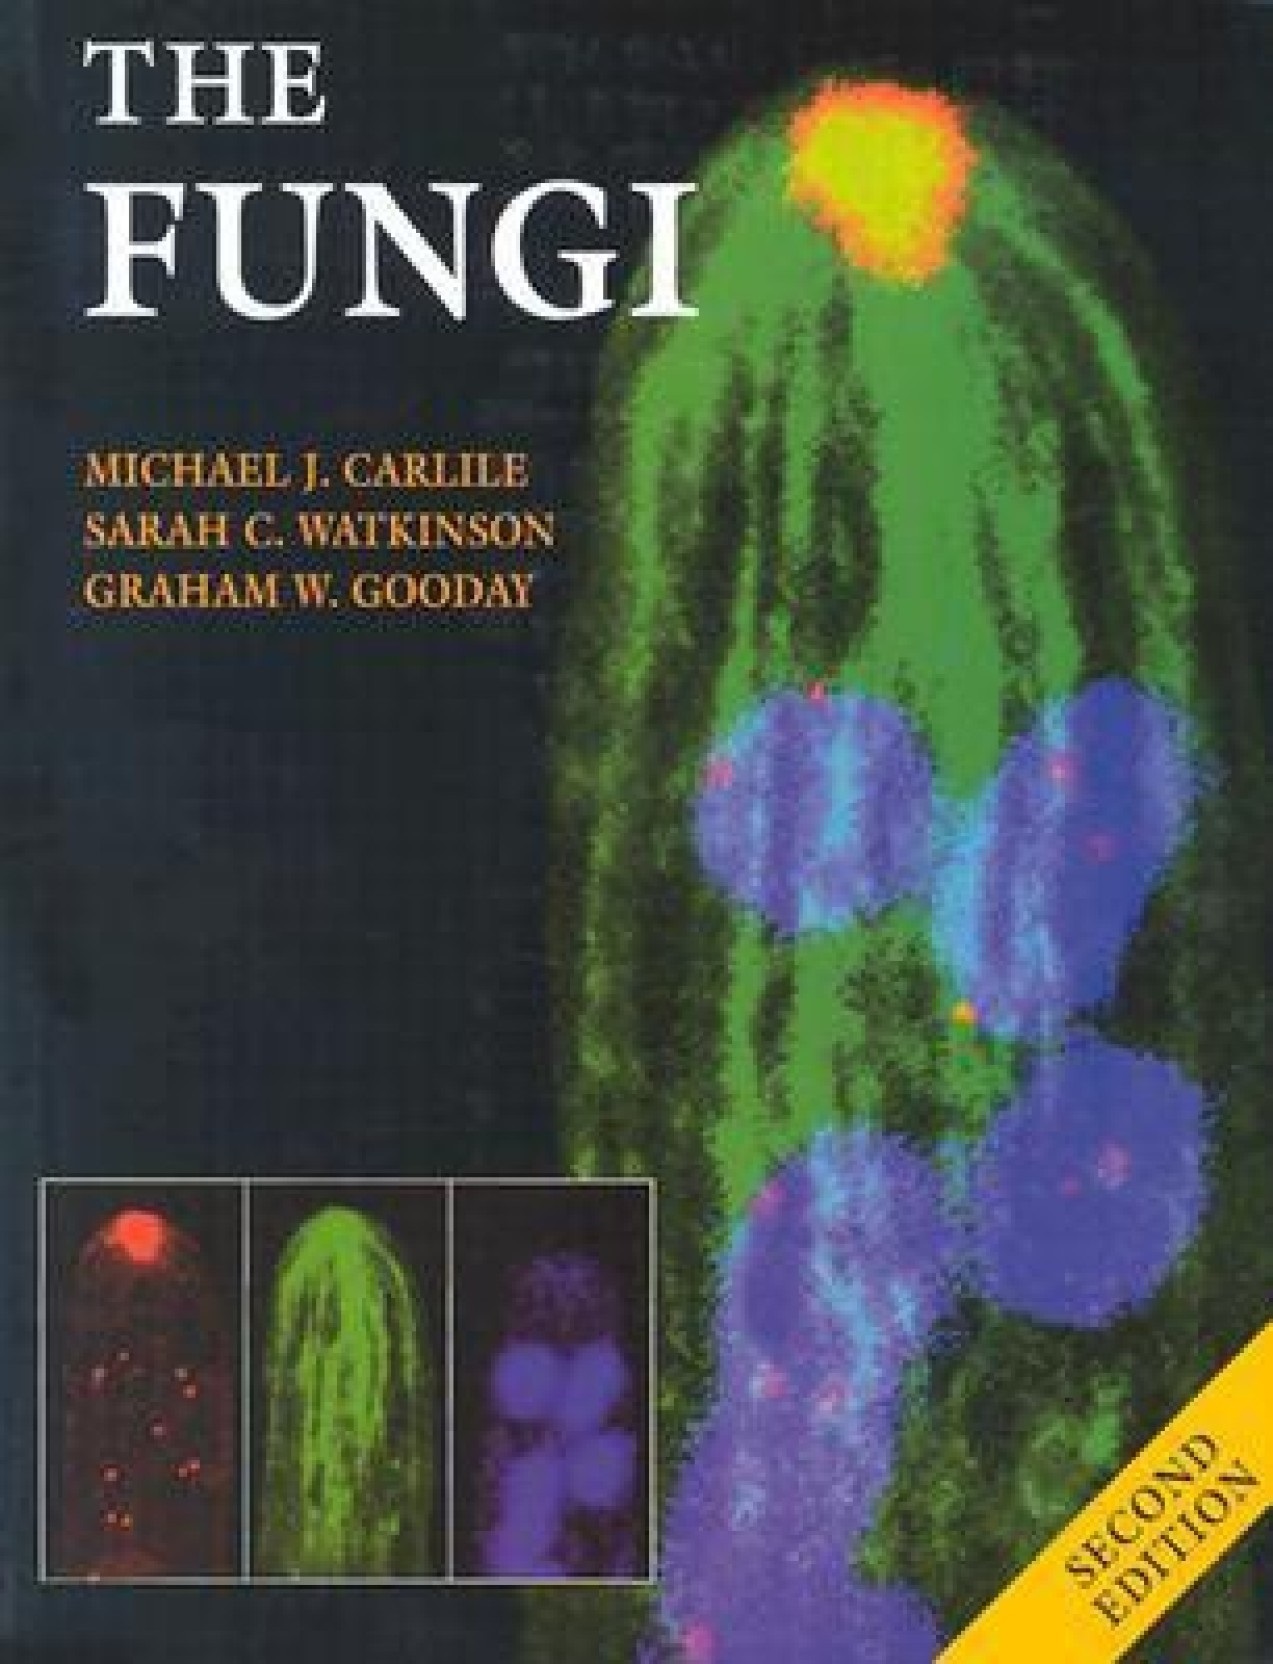 Watkinson. The fungi. 2nd ed. 2001